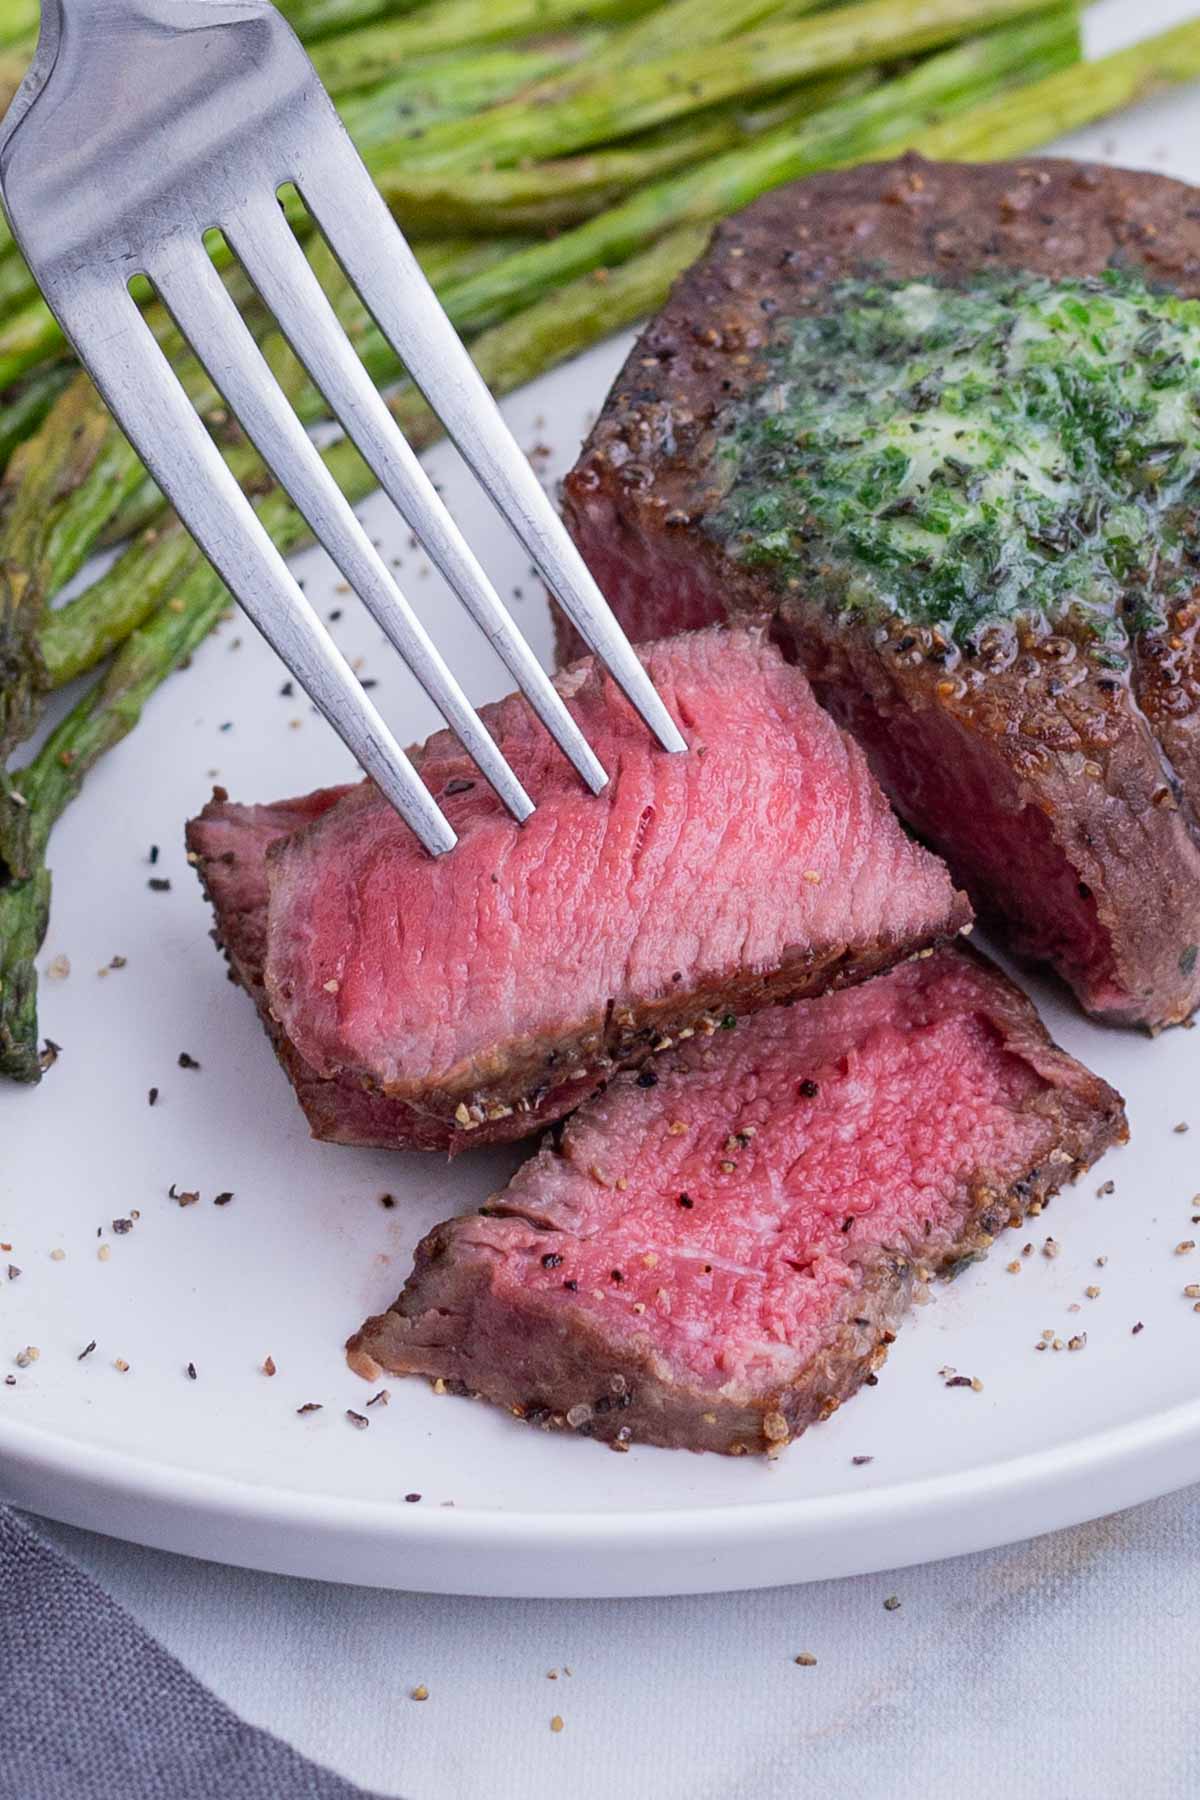 A medium rare steak is cut on a plate.